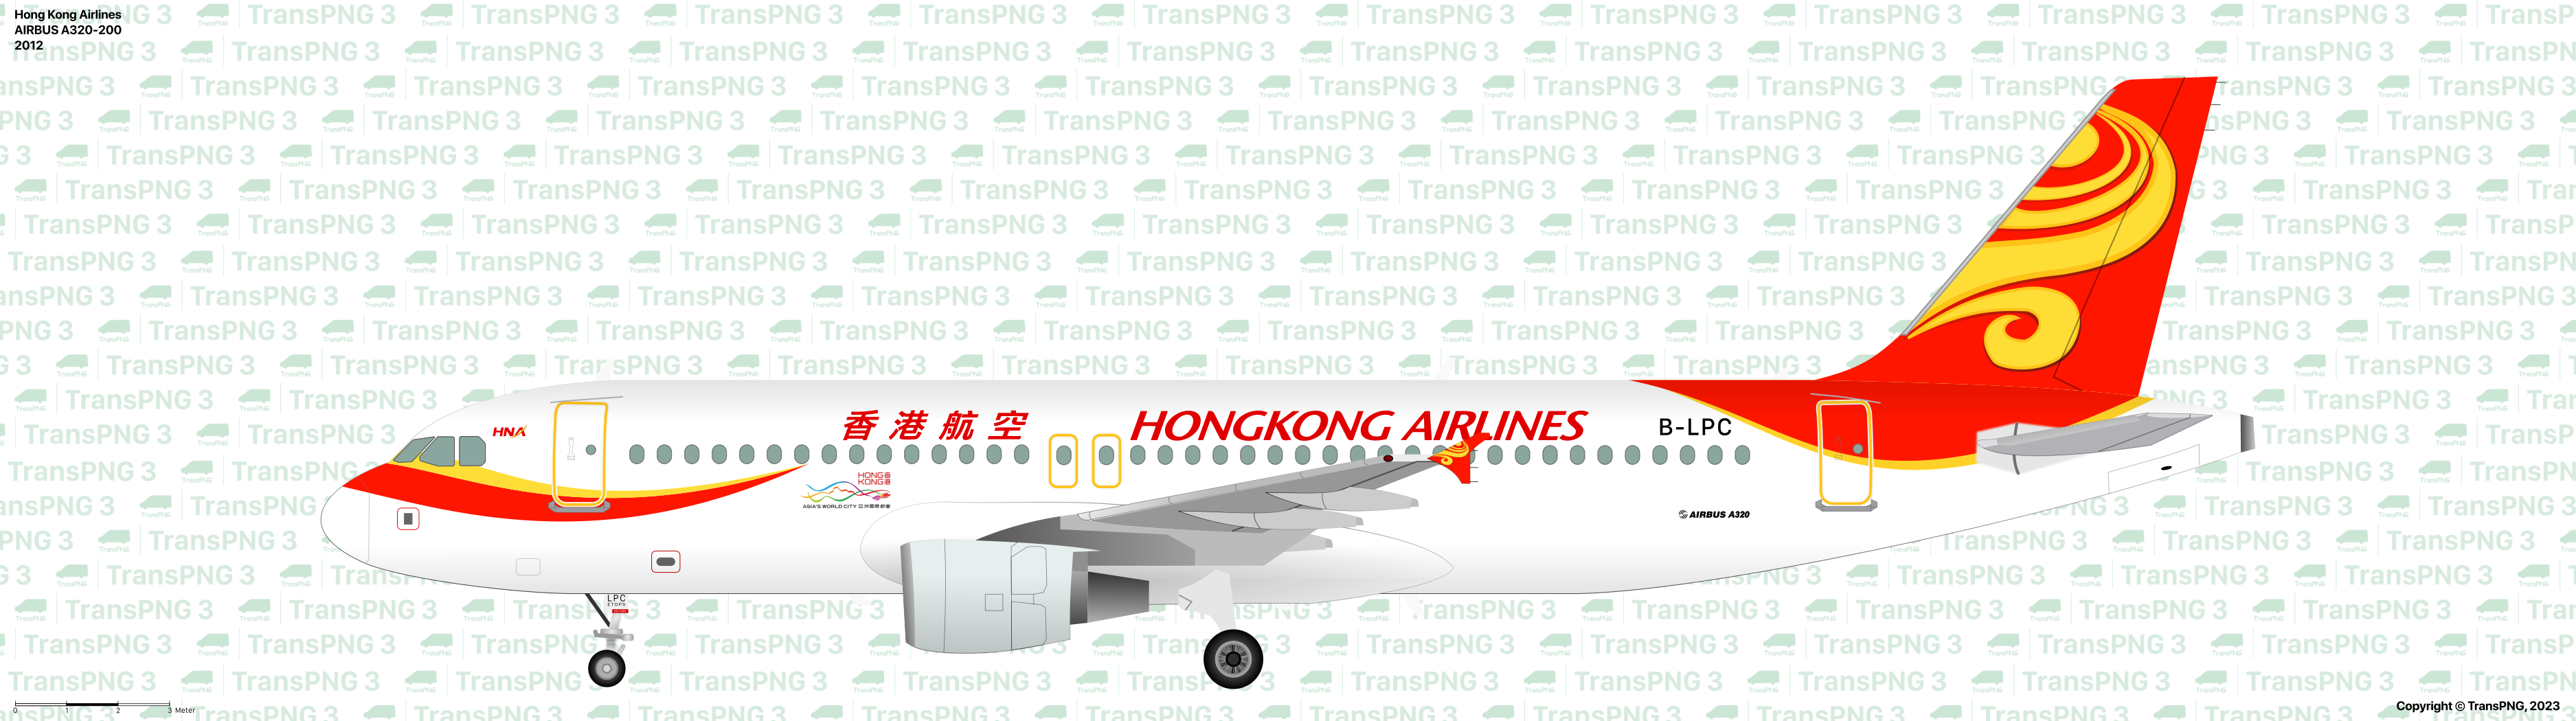 TransPNG.net | 分享世界各地多種交通工具的優秀繪圖 - 客機 53190105099_d2351001ca_o